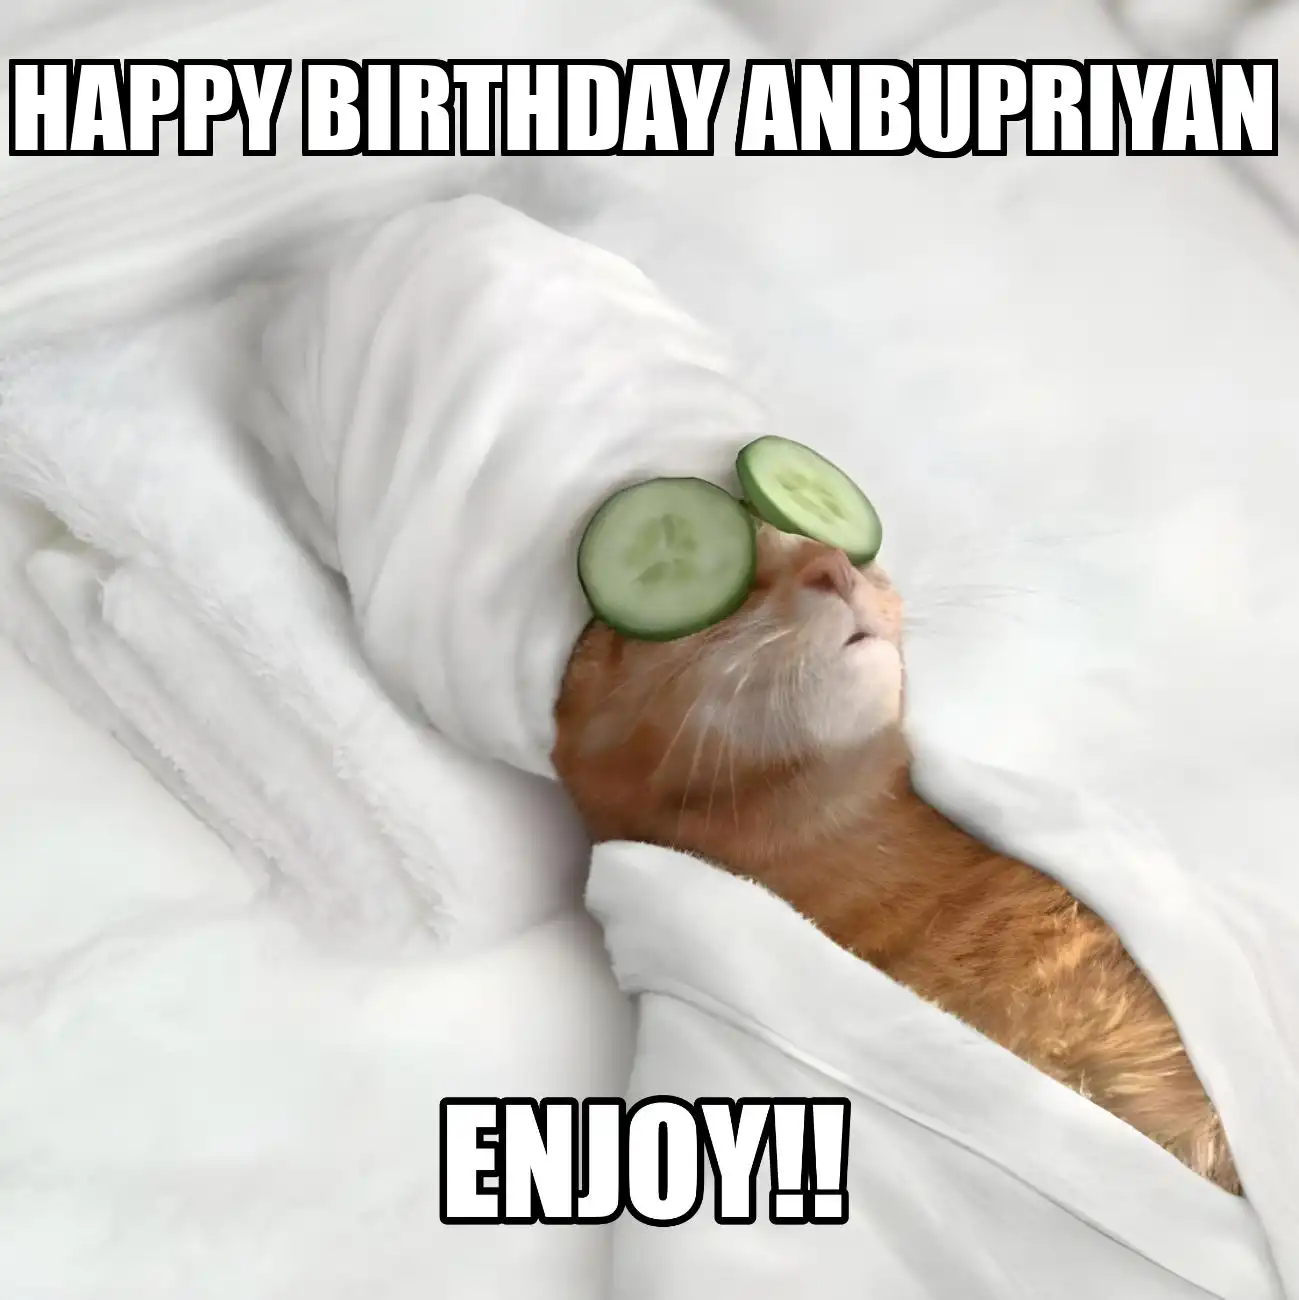 Happy Birthday Anbupriyan Enjoy Cat Meme